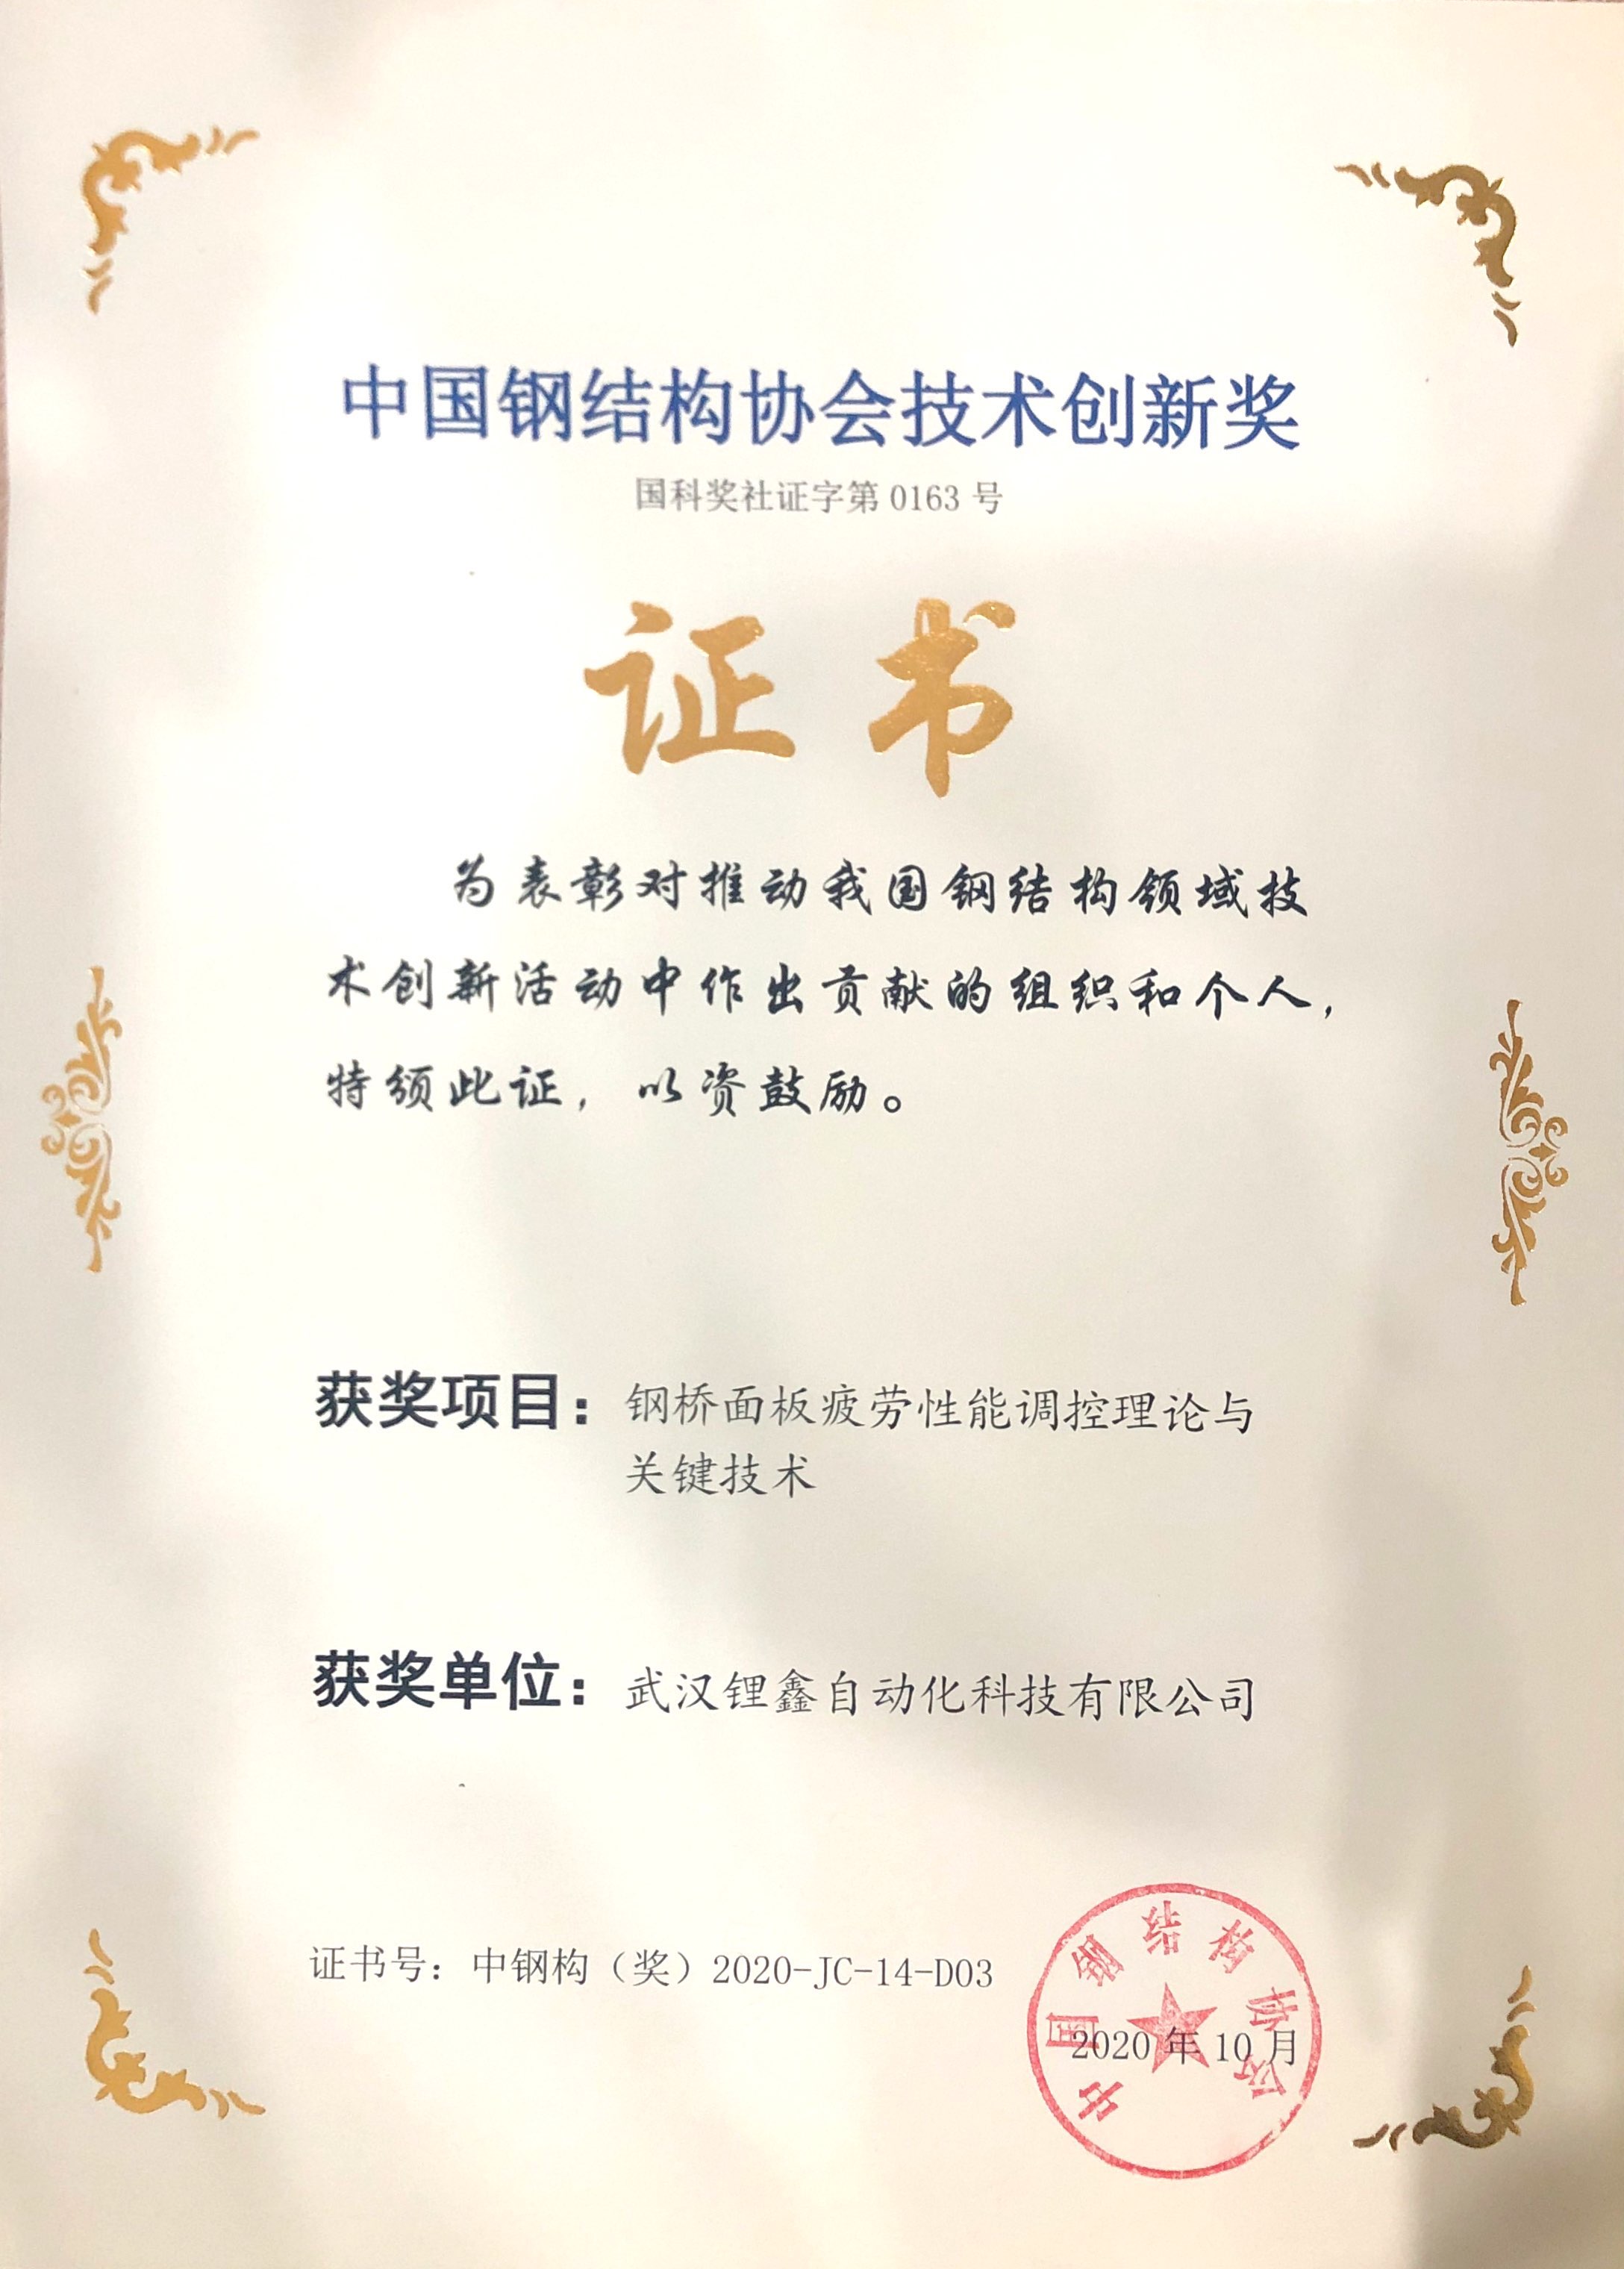 中国钢结构协会技术创新奖